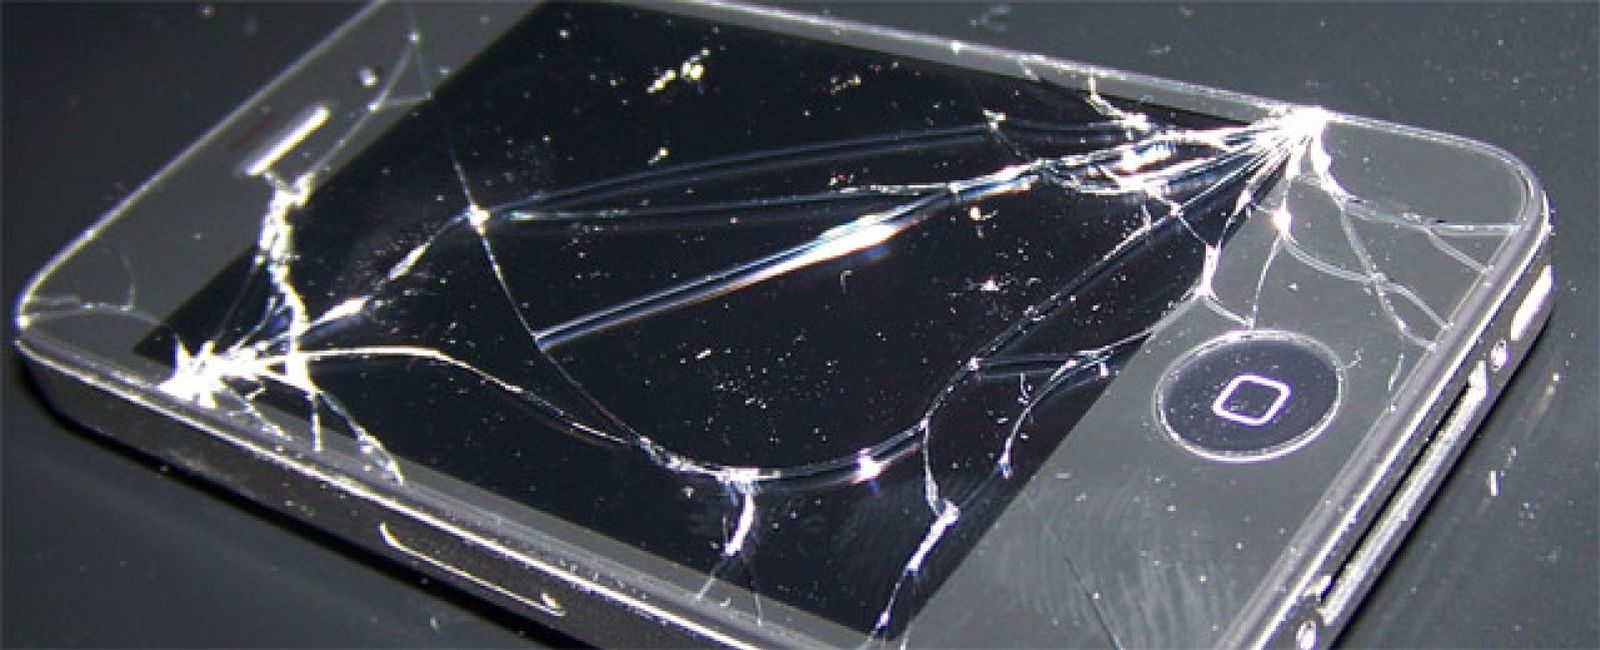 Foto: "Arreglar el iPhone 4 solo merece la pena en una tienda de chinos"